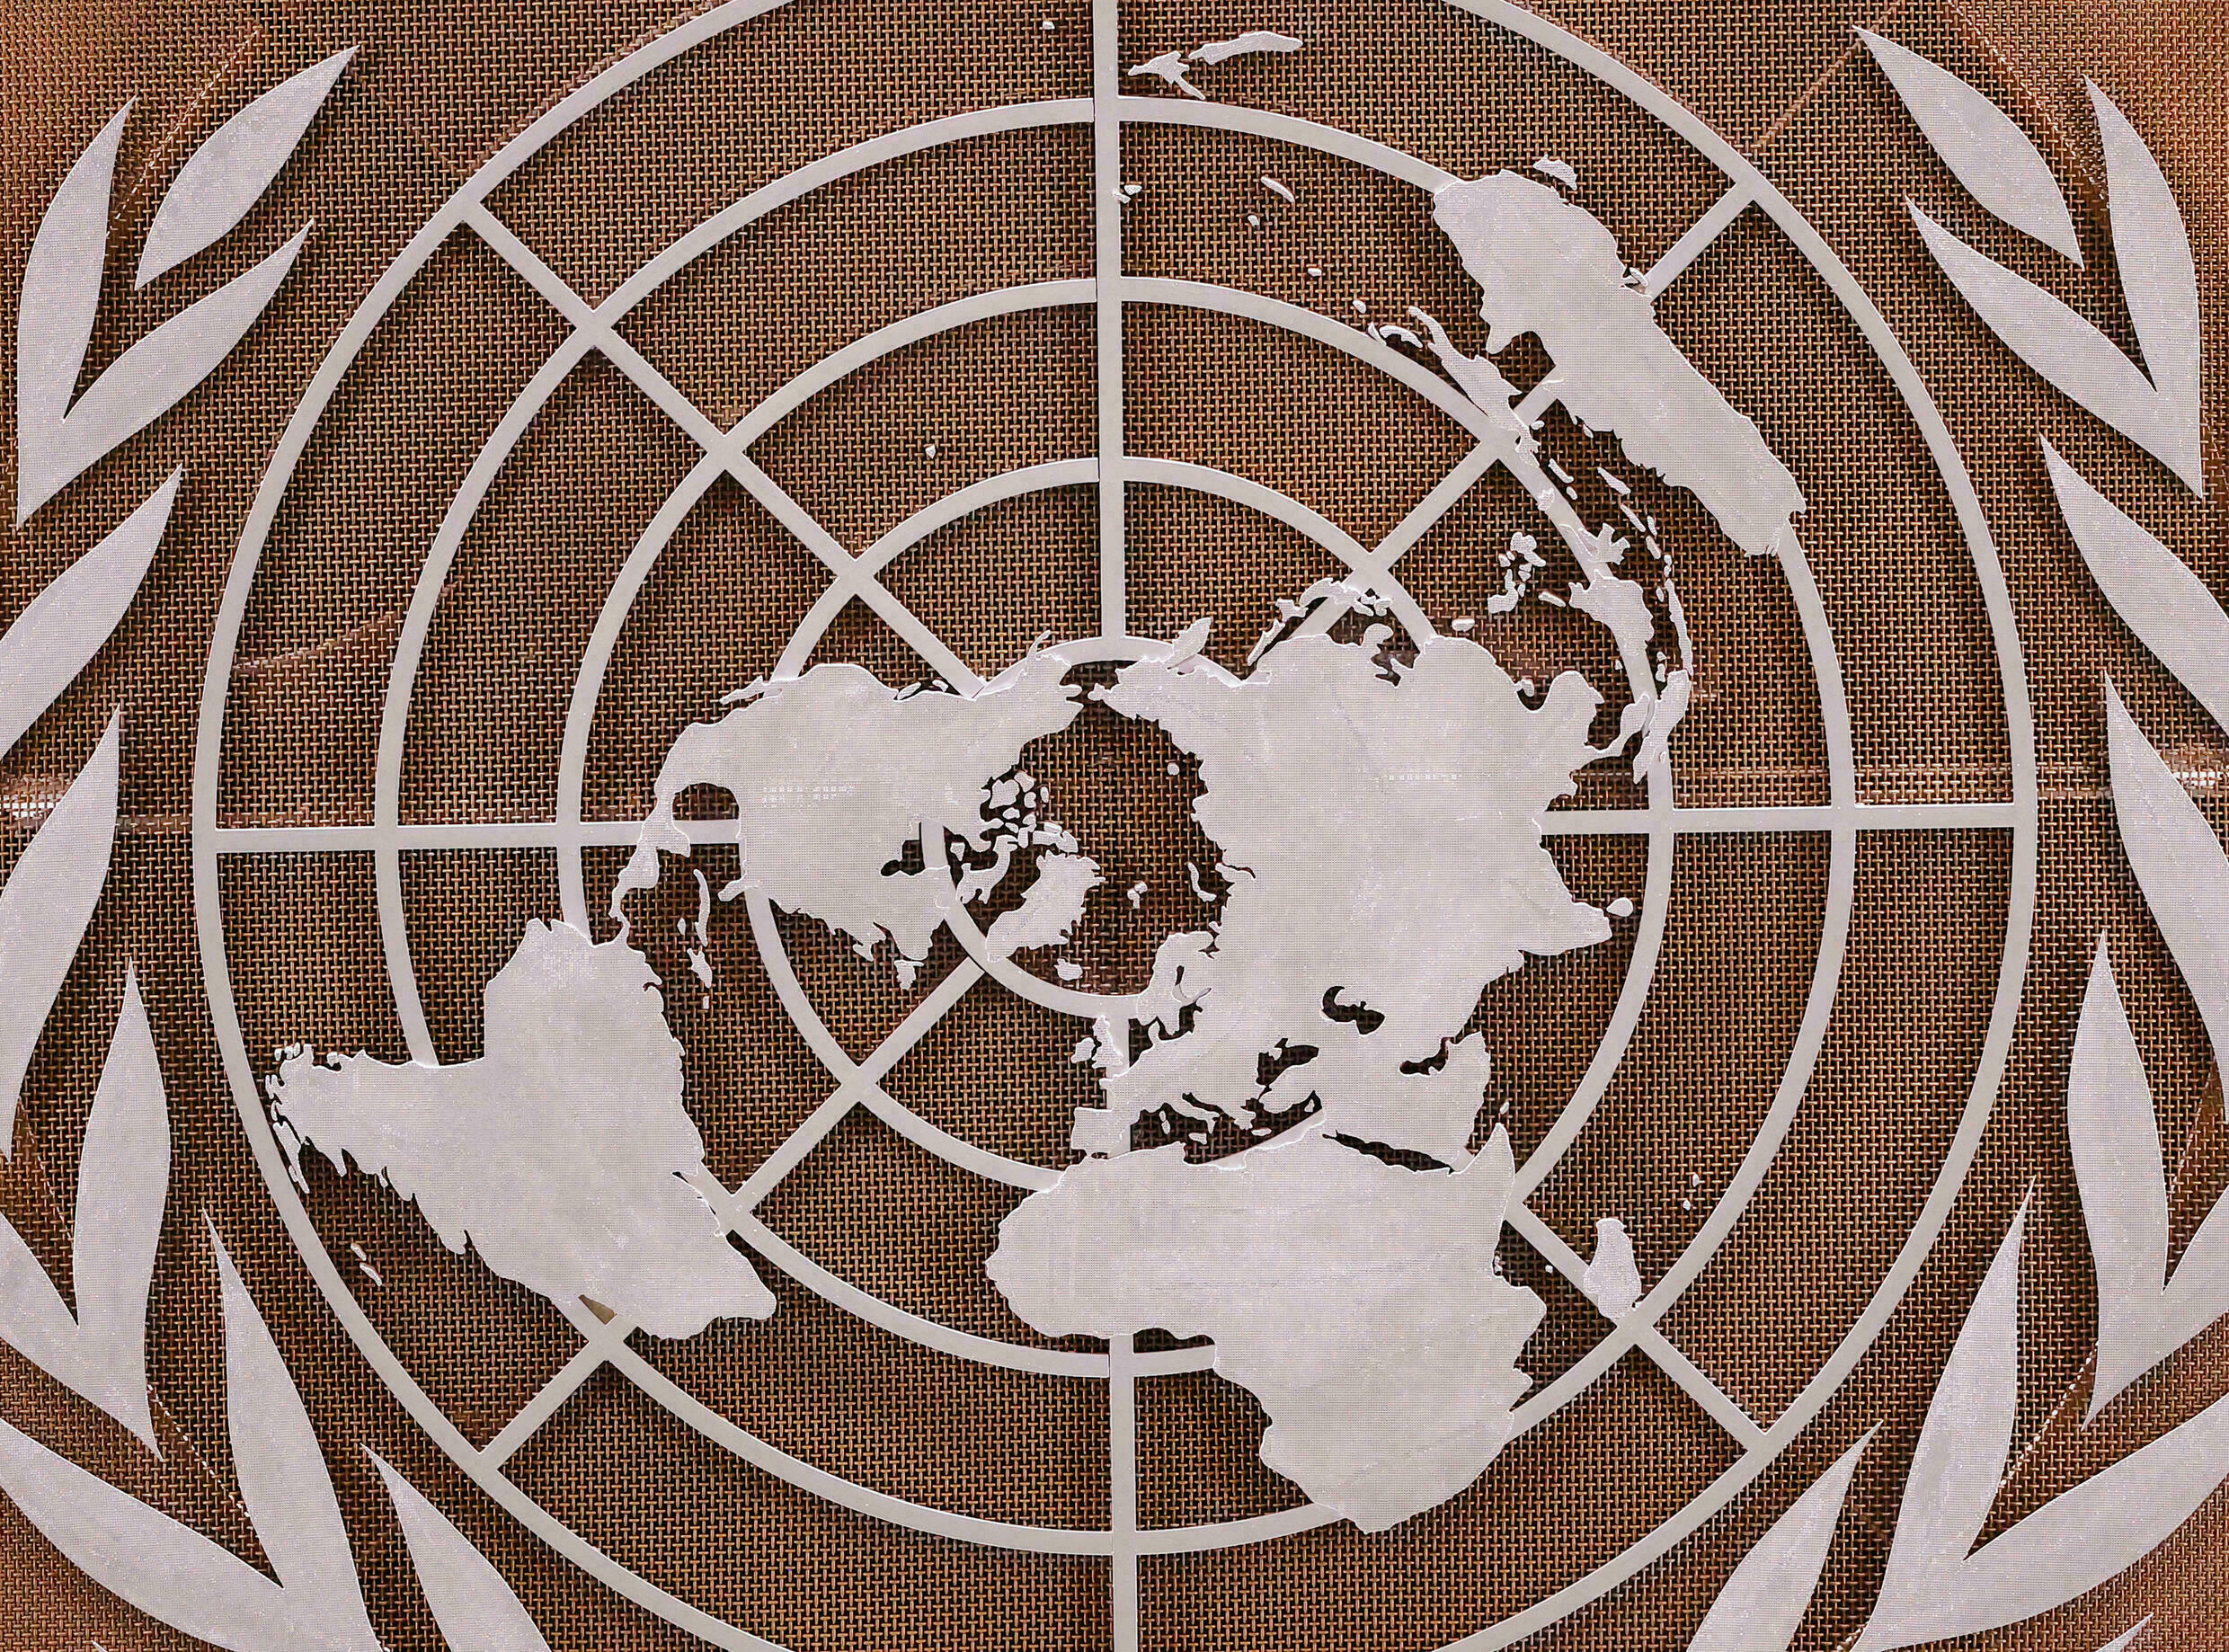 Russie : Moscou bloque les comités d’experts de l’ONU enquêtant dans plusieurs pays africains